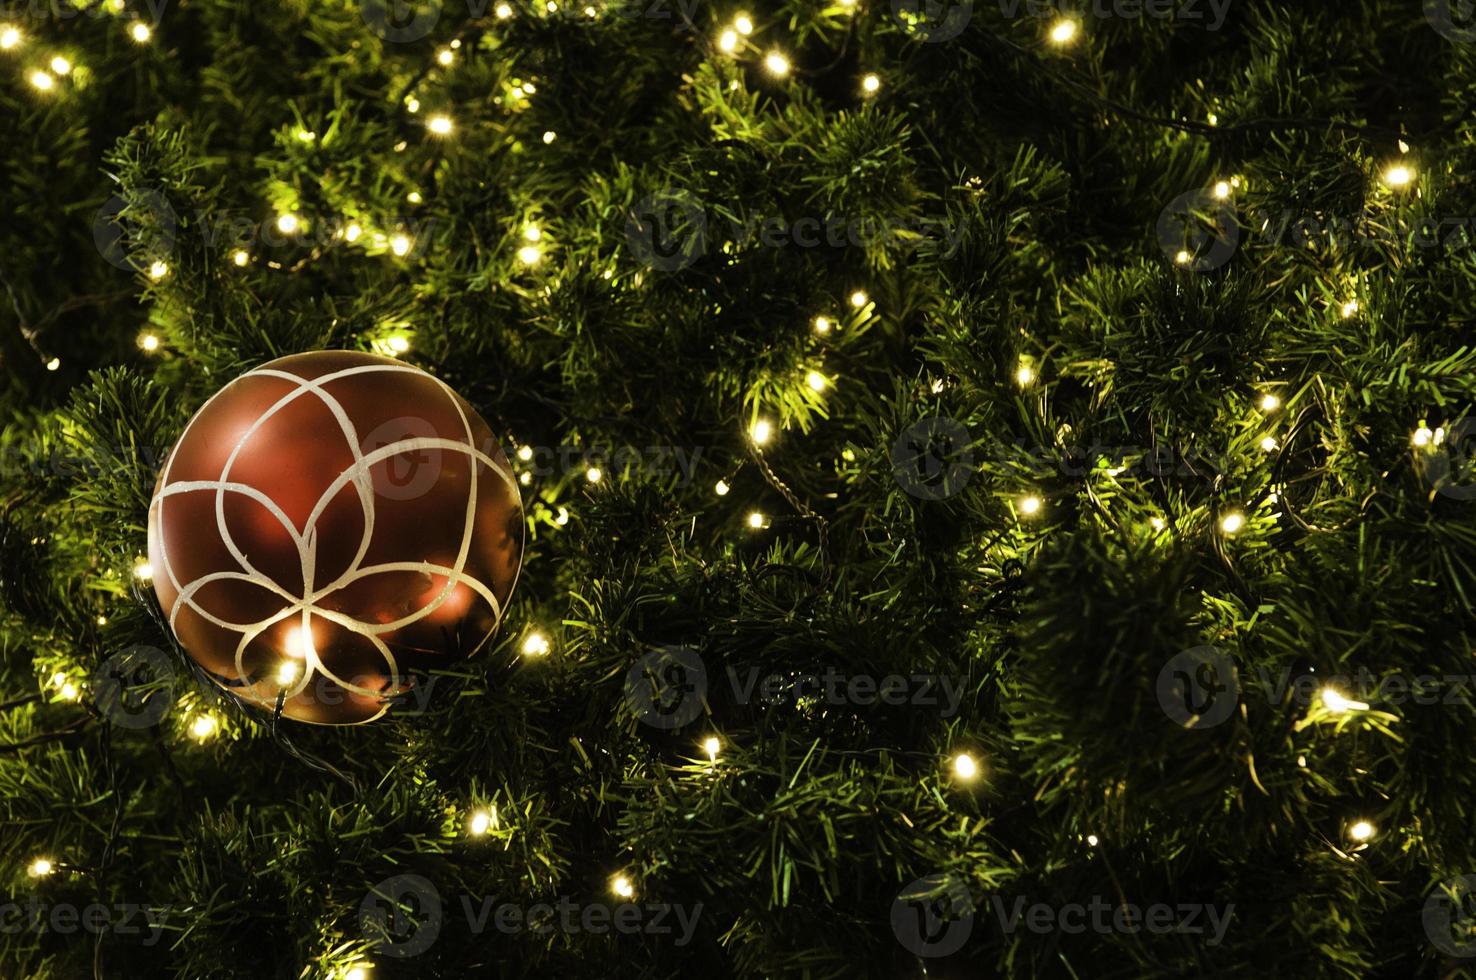 bola de navidad colgando de un árbol. foto